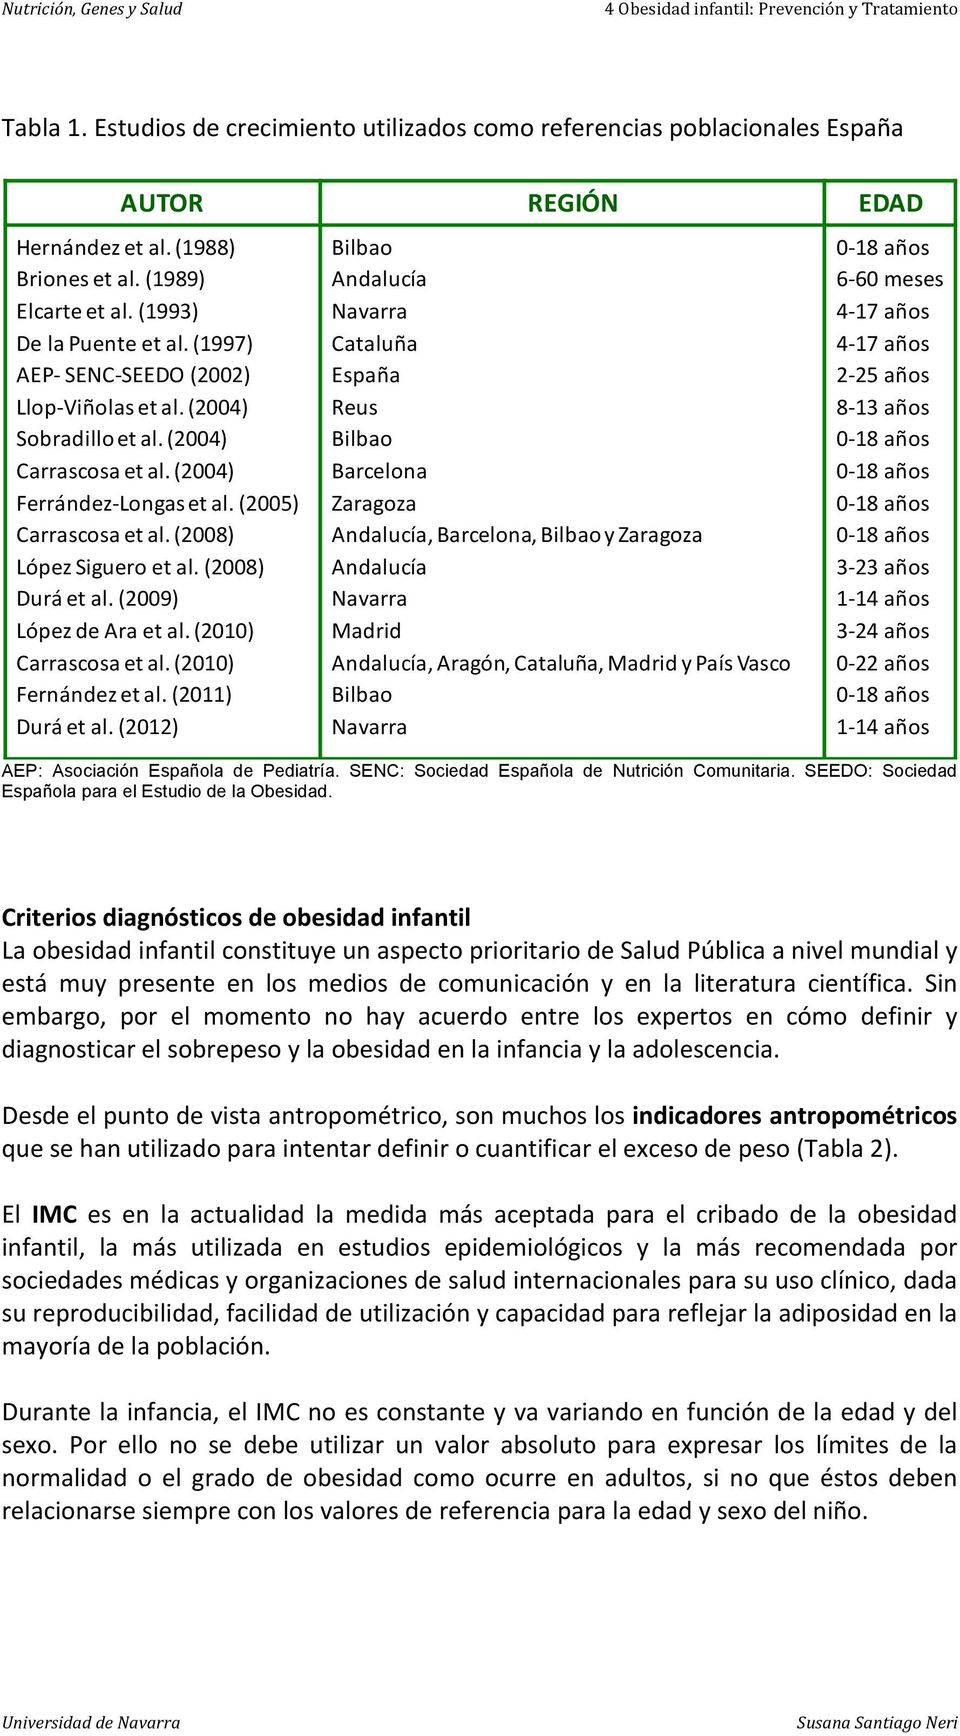 (2009) López de Ara et al. (2010) Carrascosa et al. (2010) Fernández et al. (2011) Durá et al.